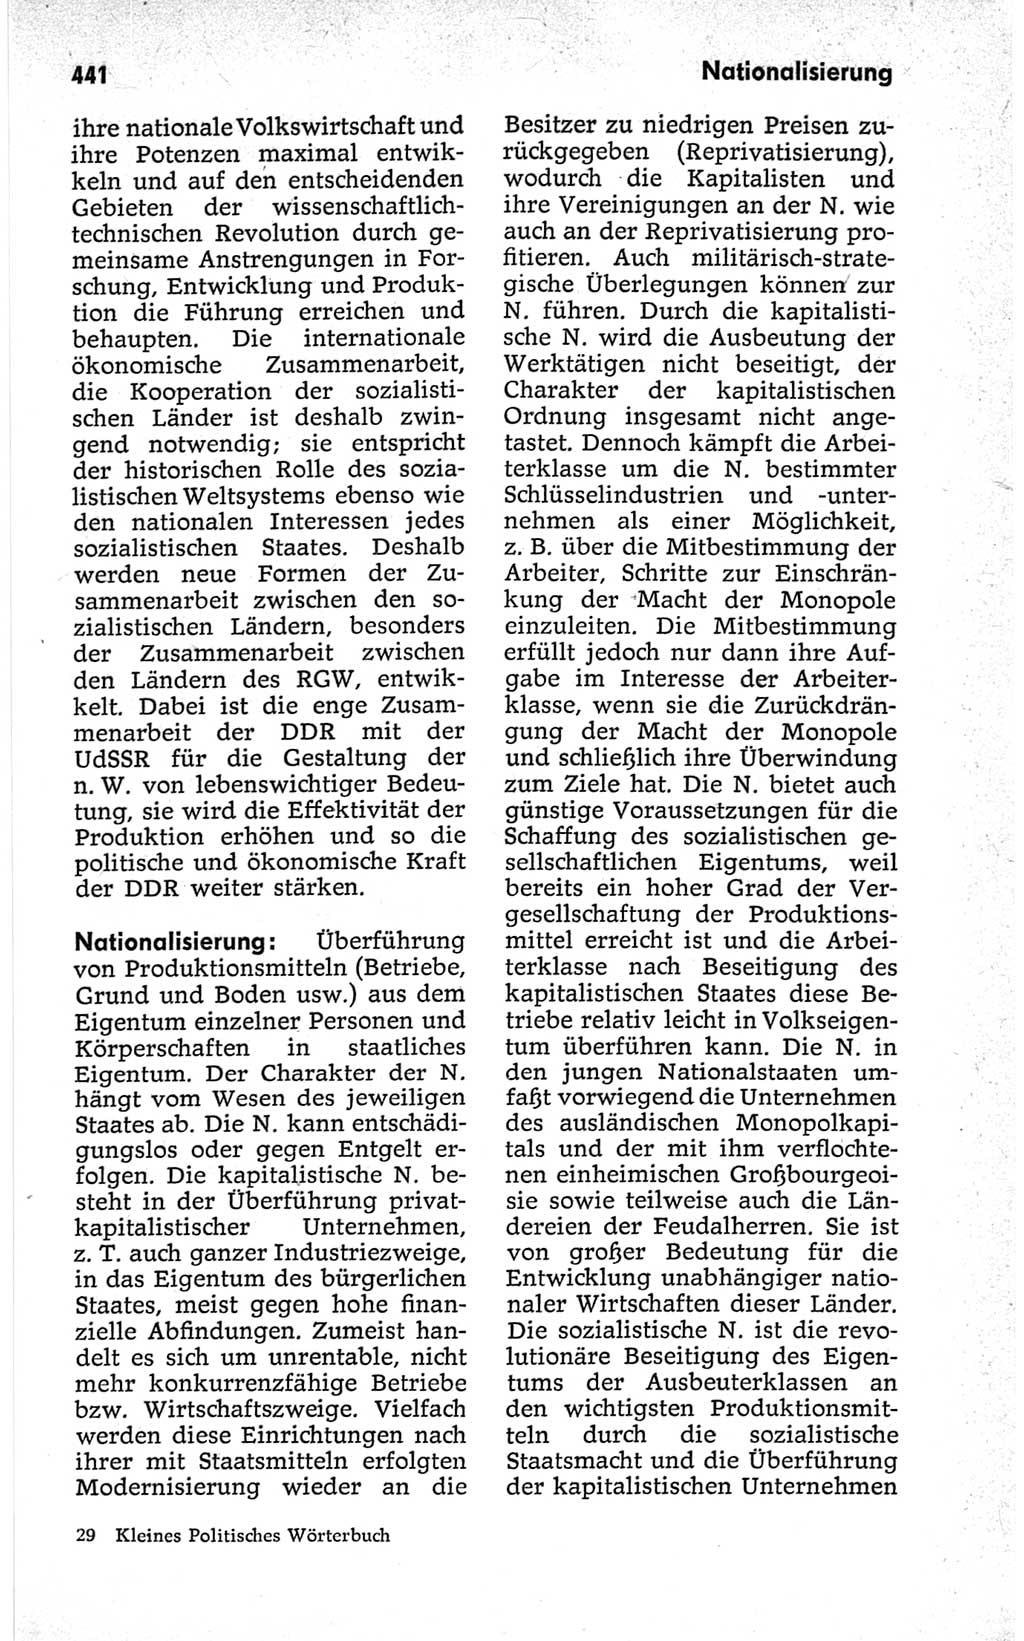 Kleines politisches Wörterbuch [Deutsche Demokratische Republik (DDR)] 1967, Seite 441 (Kl. pol. Wb. DDR 1967, S. 441)